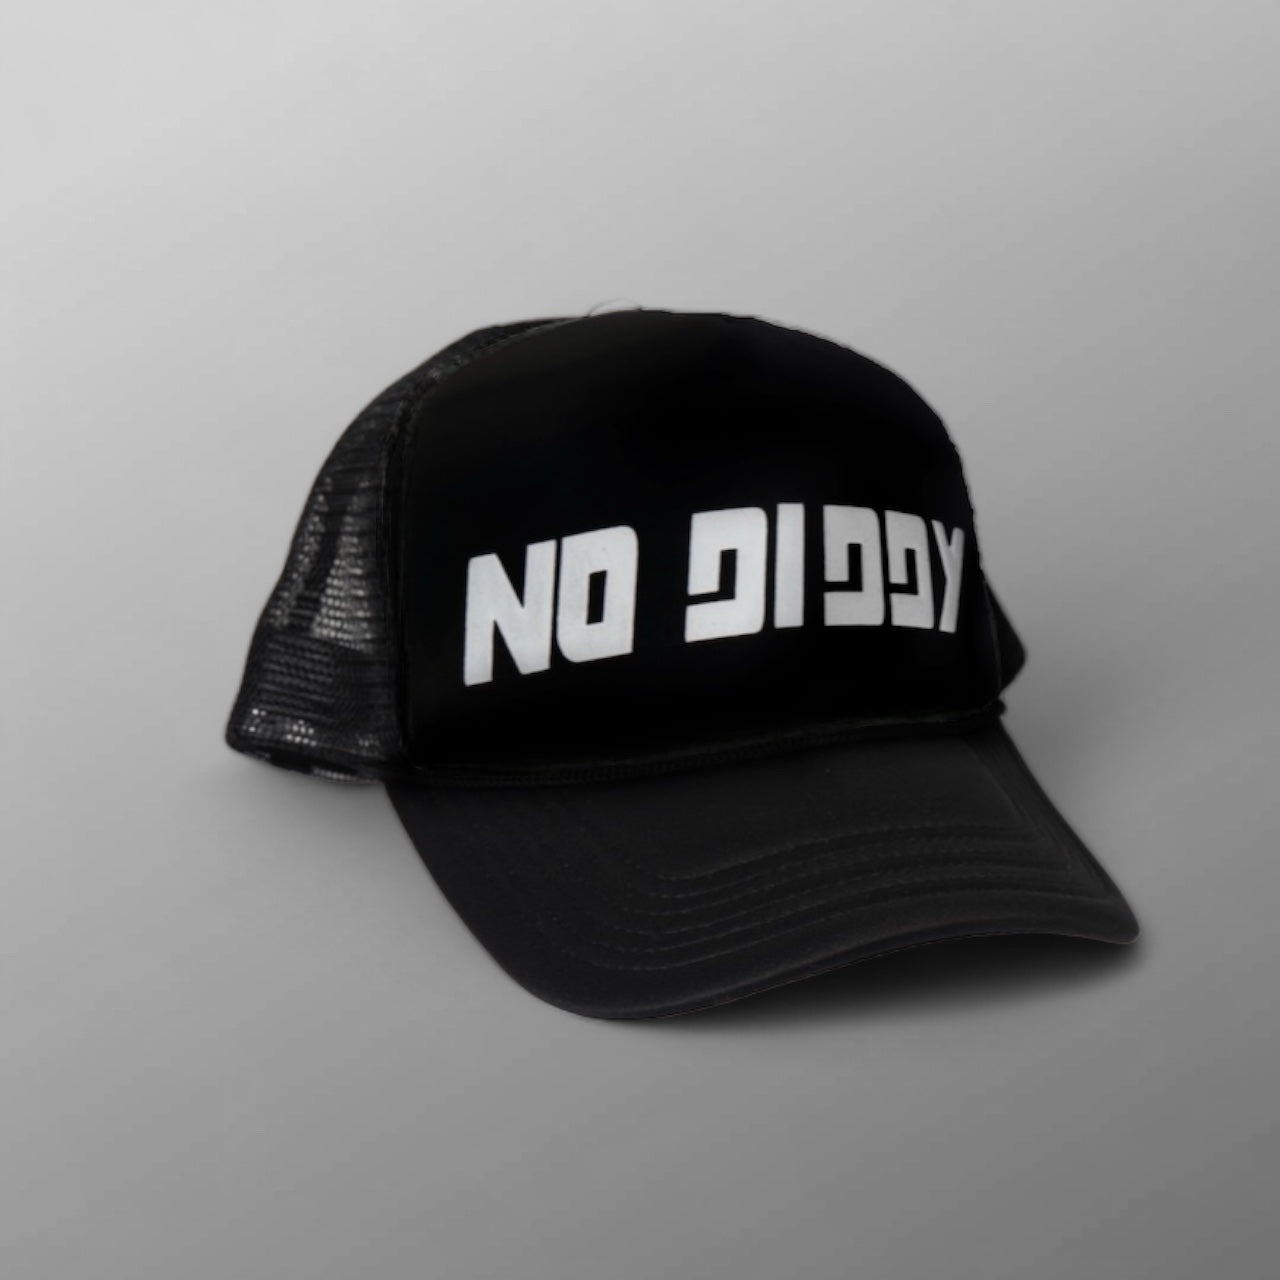 NO DIDDY TRUCKER HAT